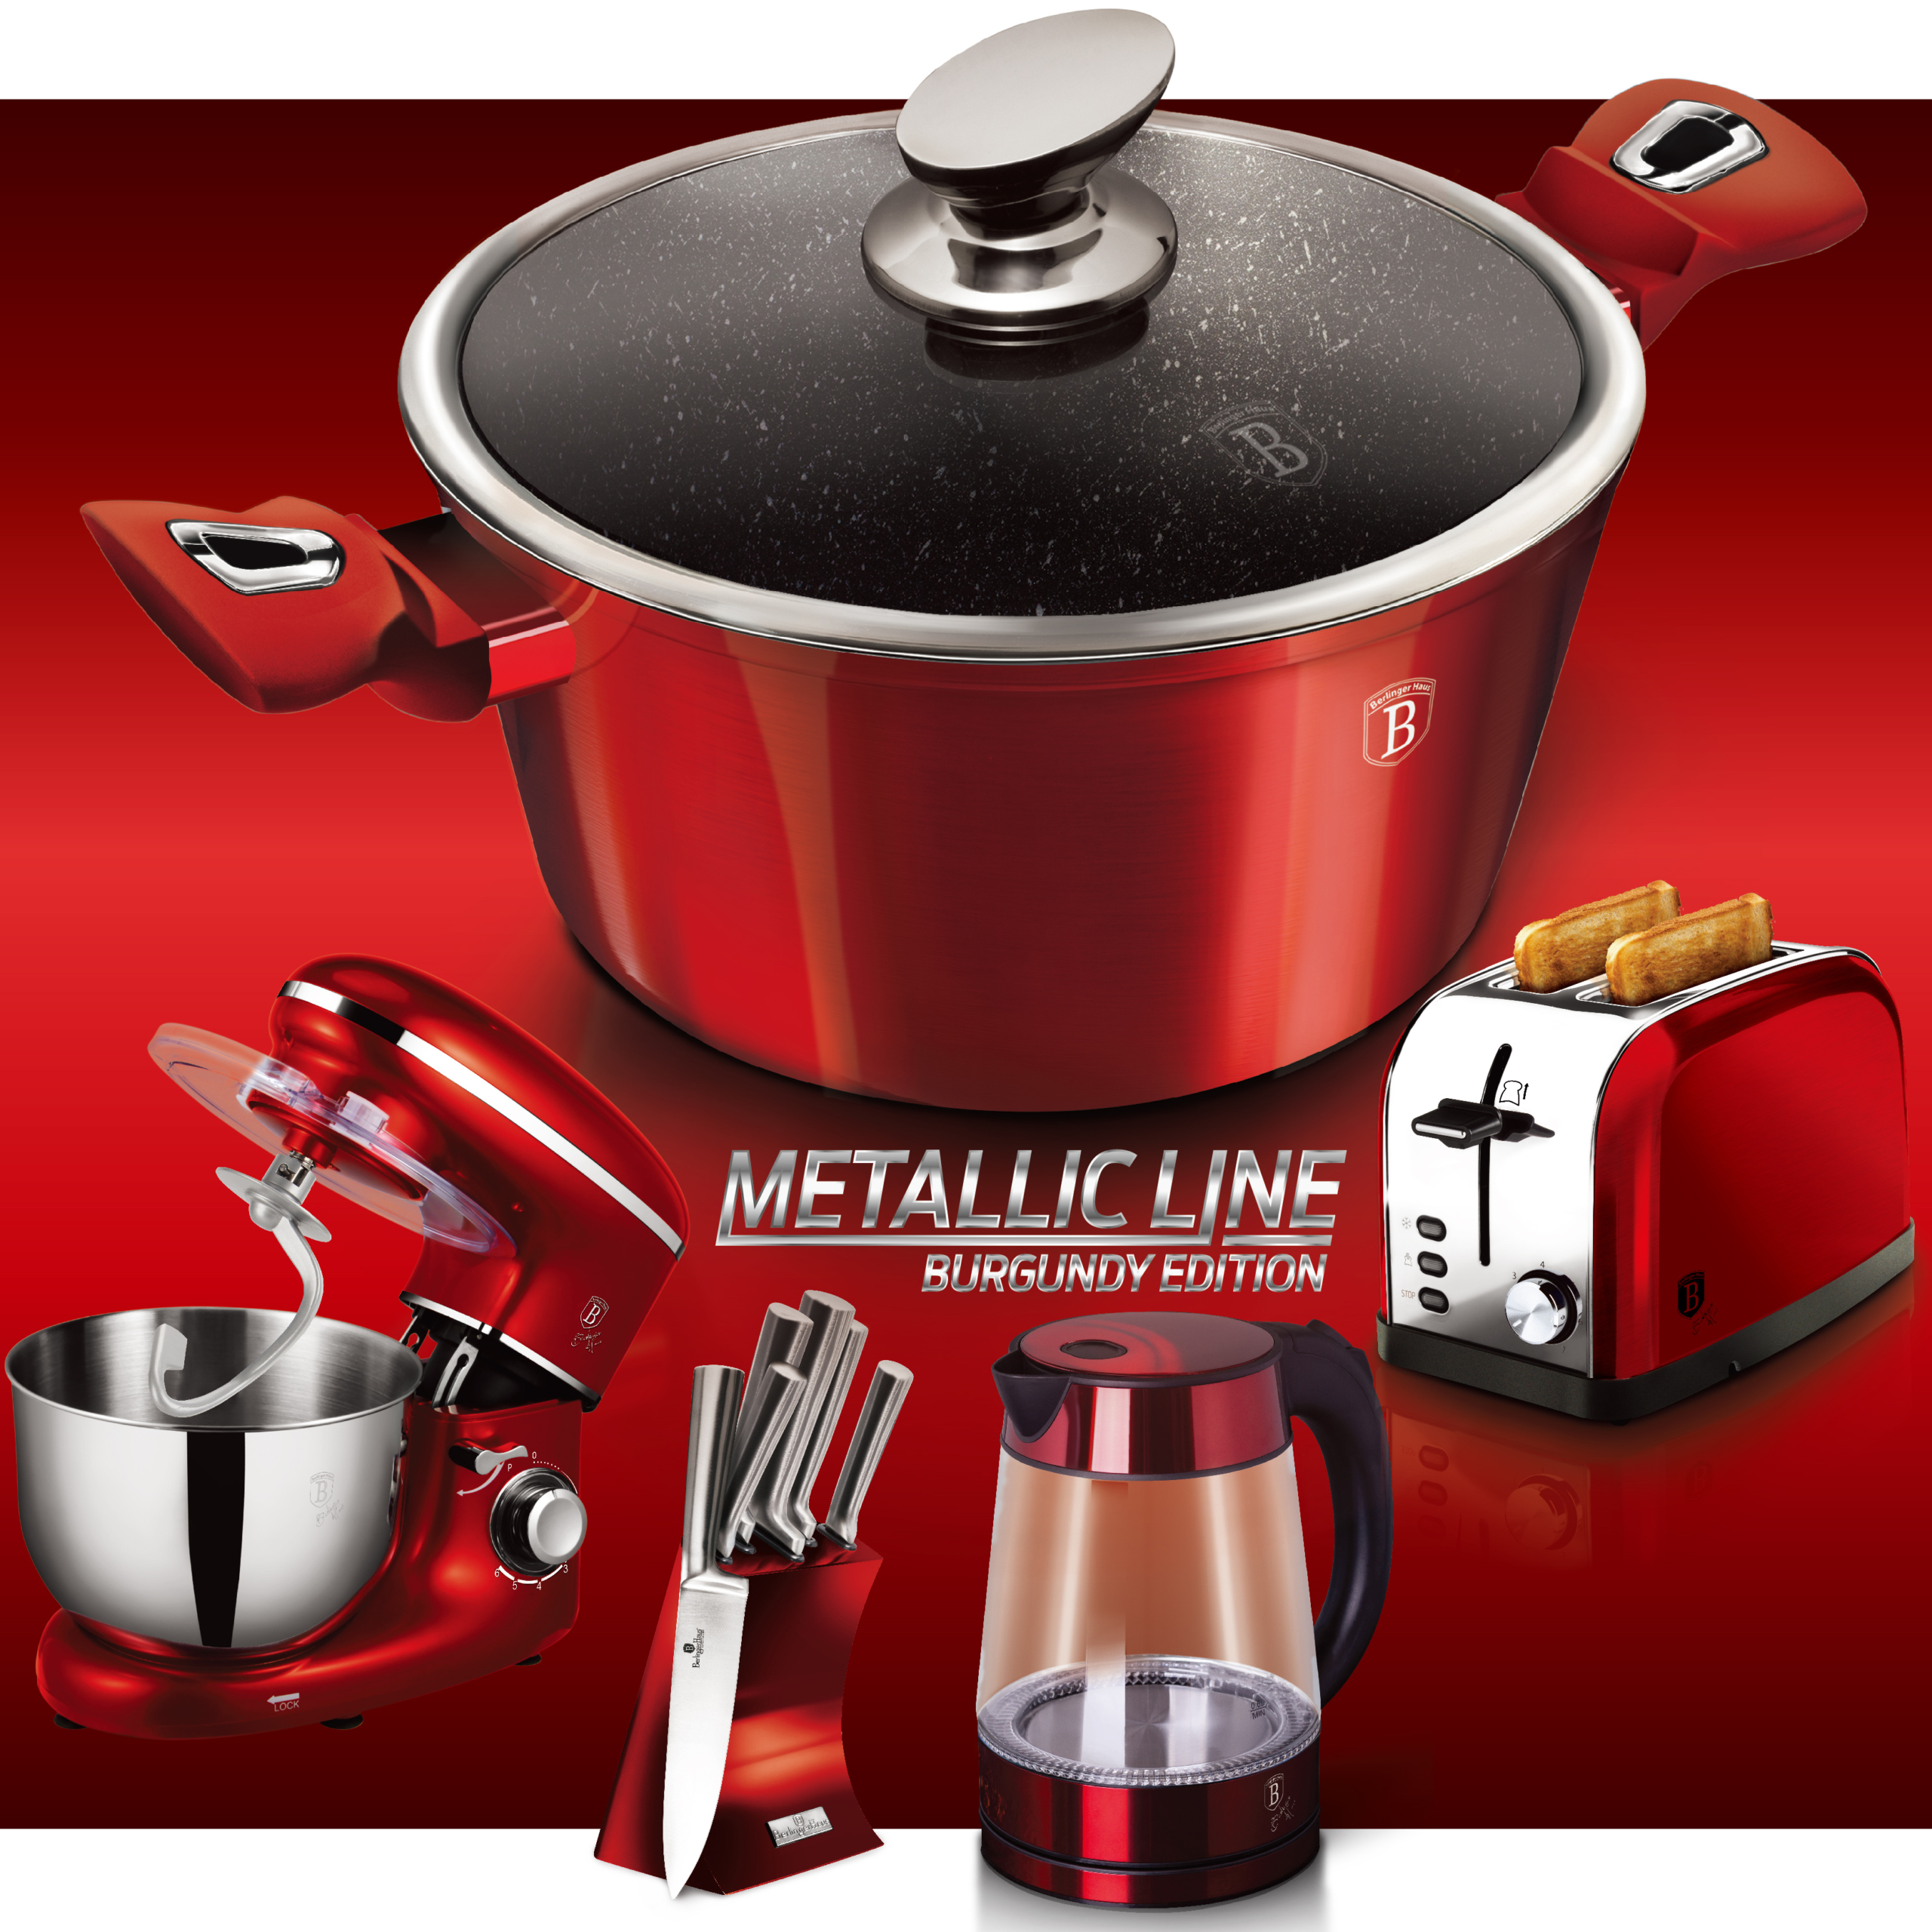 BerlingerHaus Metallic Line Burgundy Edition termék család oldal a főbb konyhai termékekkel